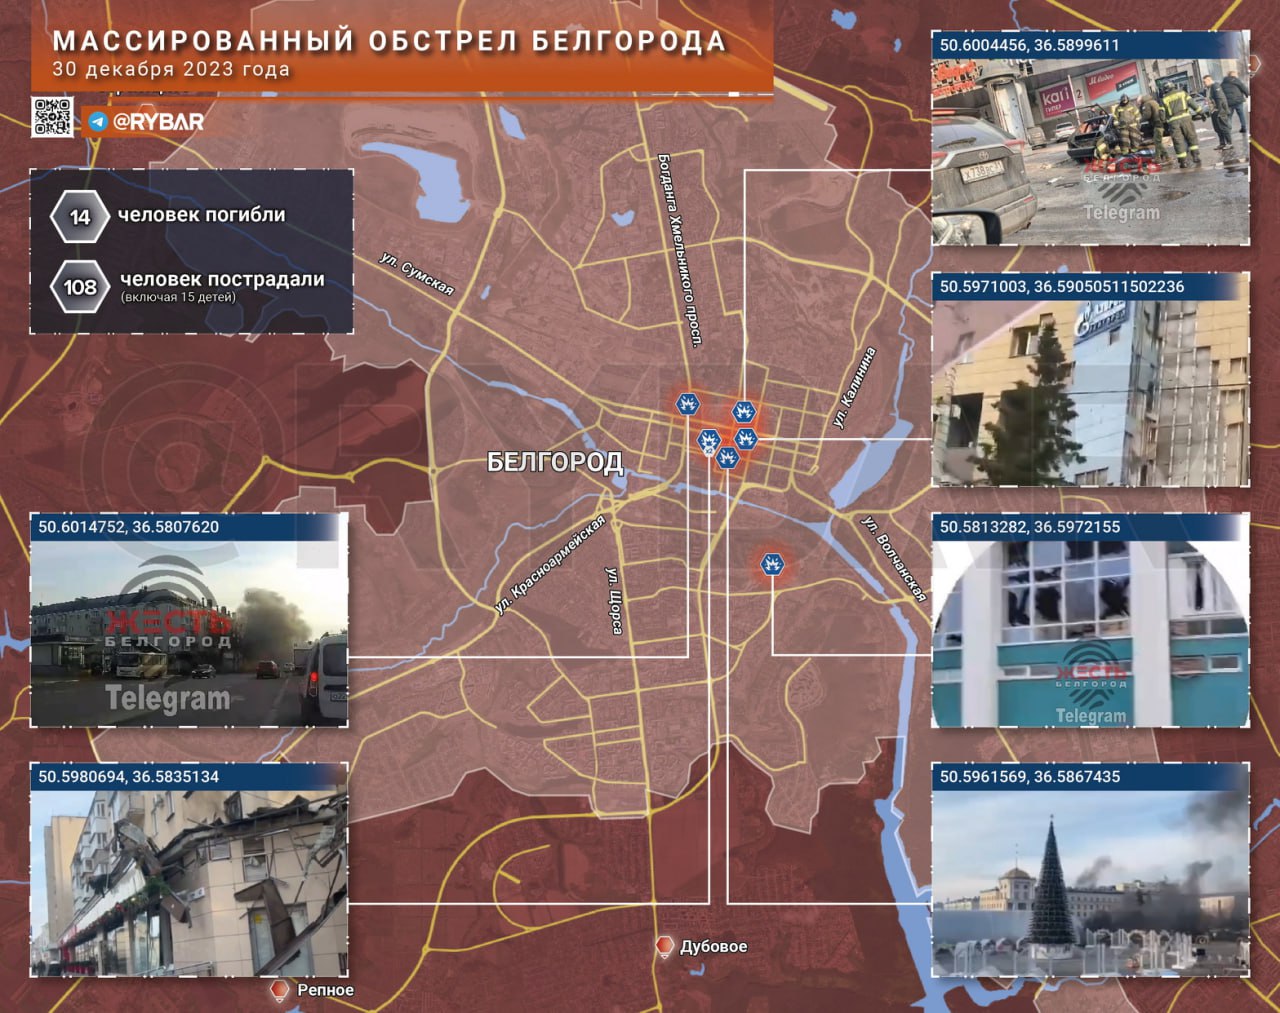 Сегодня ВСУ нанесли один из самых масштабных ударов по территории Белгородской области с начала Специальной военной операции